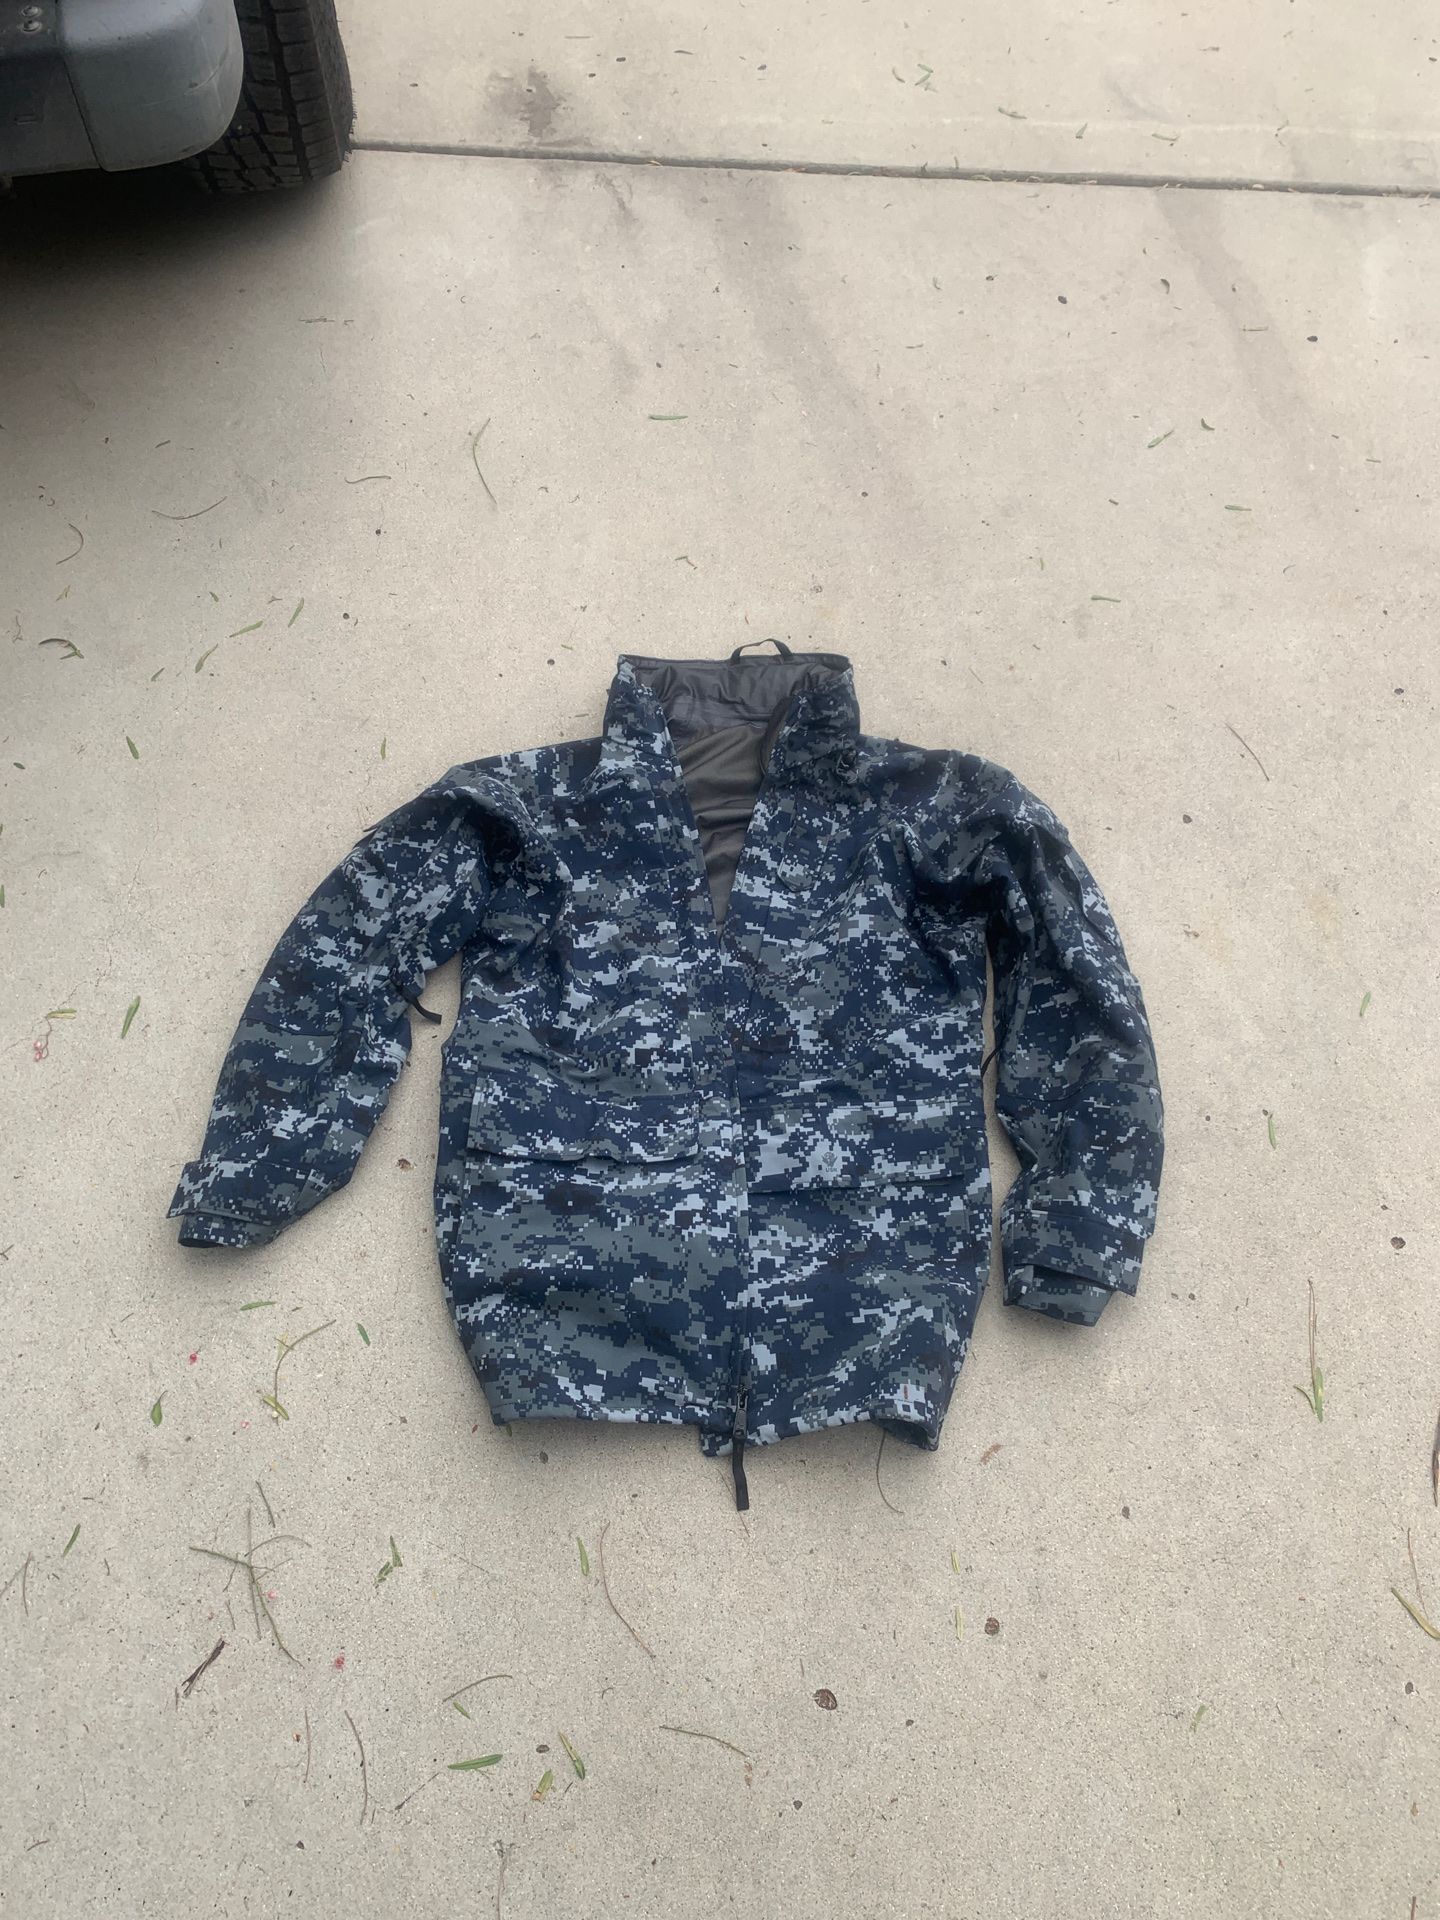 Navy Parka Small Long (Gortex) Military Camouflage Rain Jacket